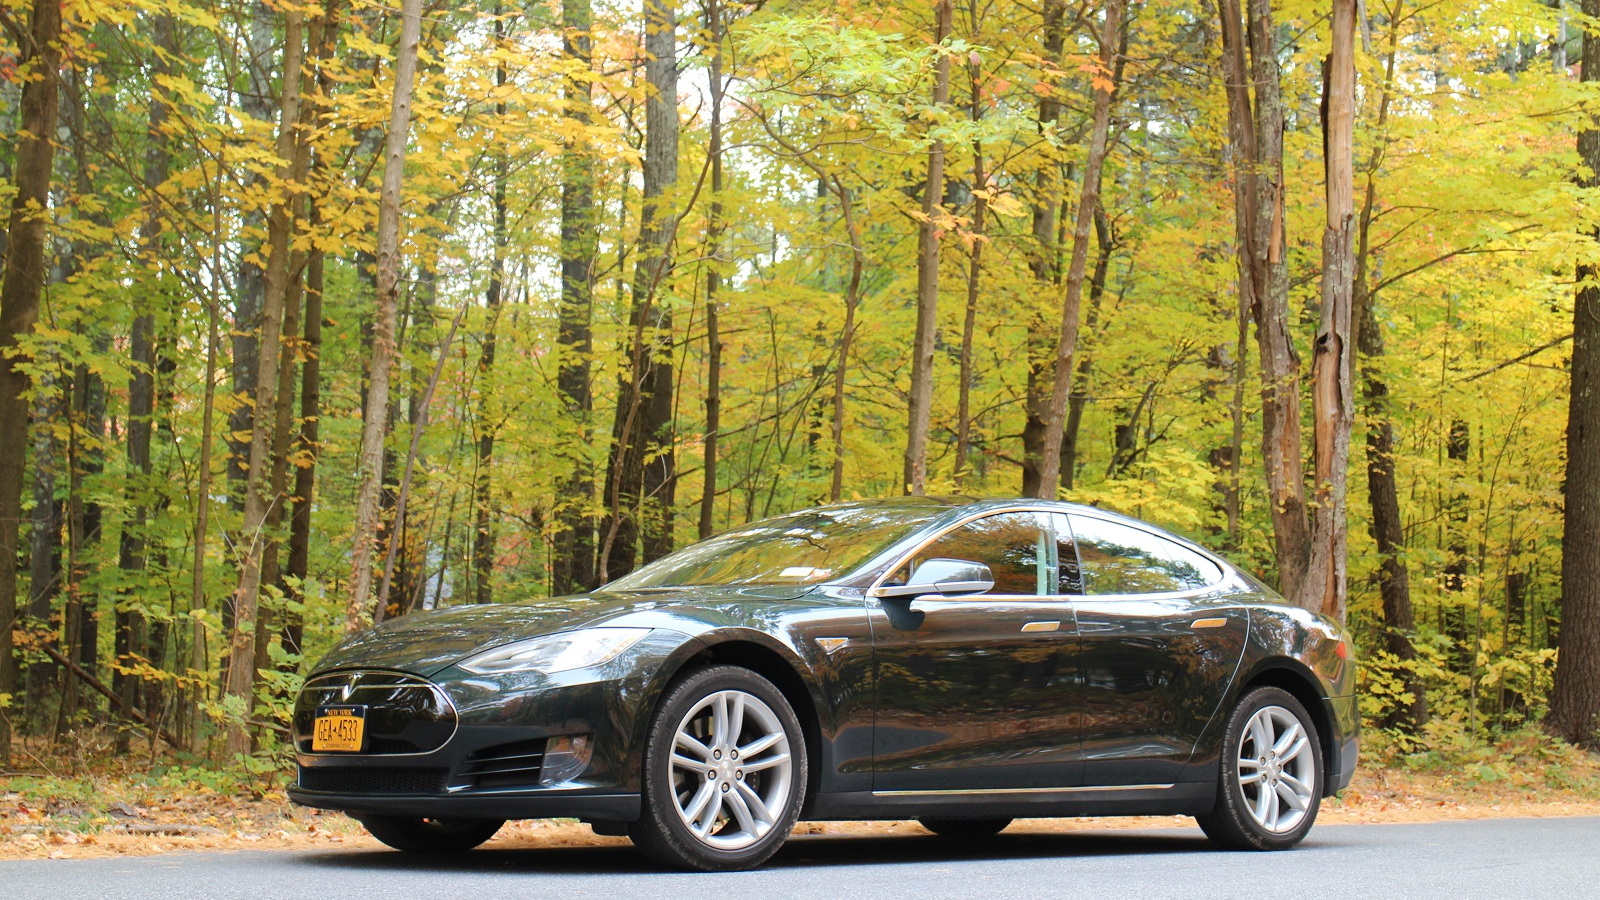 2013 Tesla Model S owned by David Noland, Catskill Mountains, NY, Oct 2015